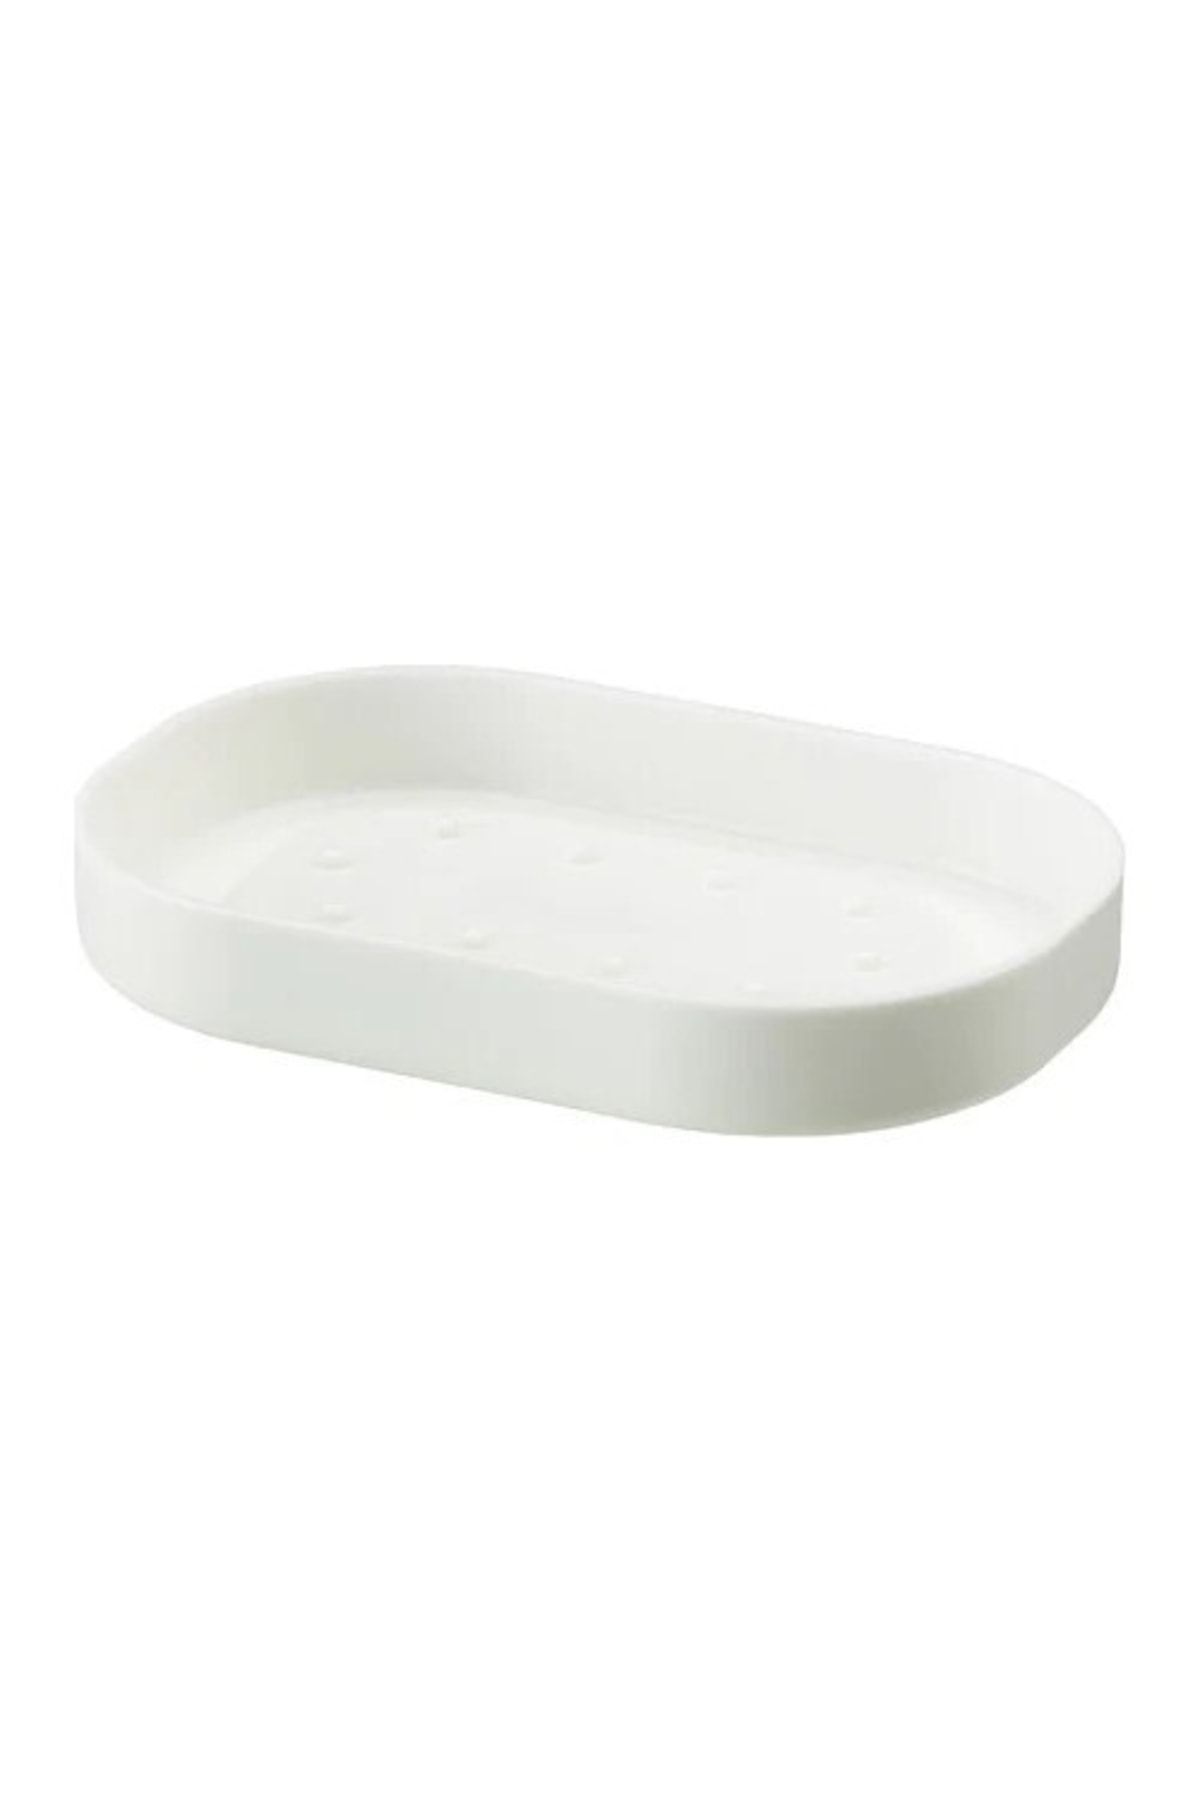 IKEA Enudden Plastik Katı Sabunluk - Beyaz